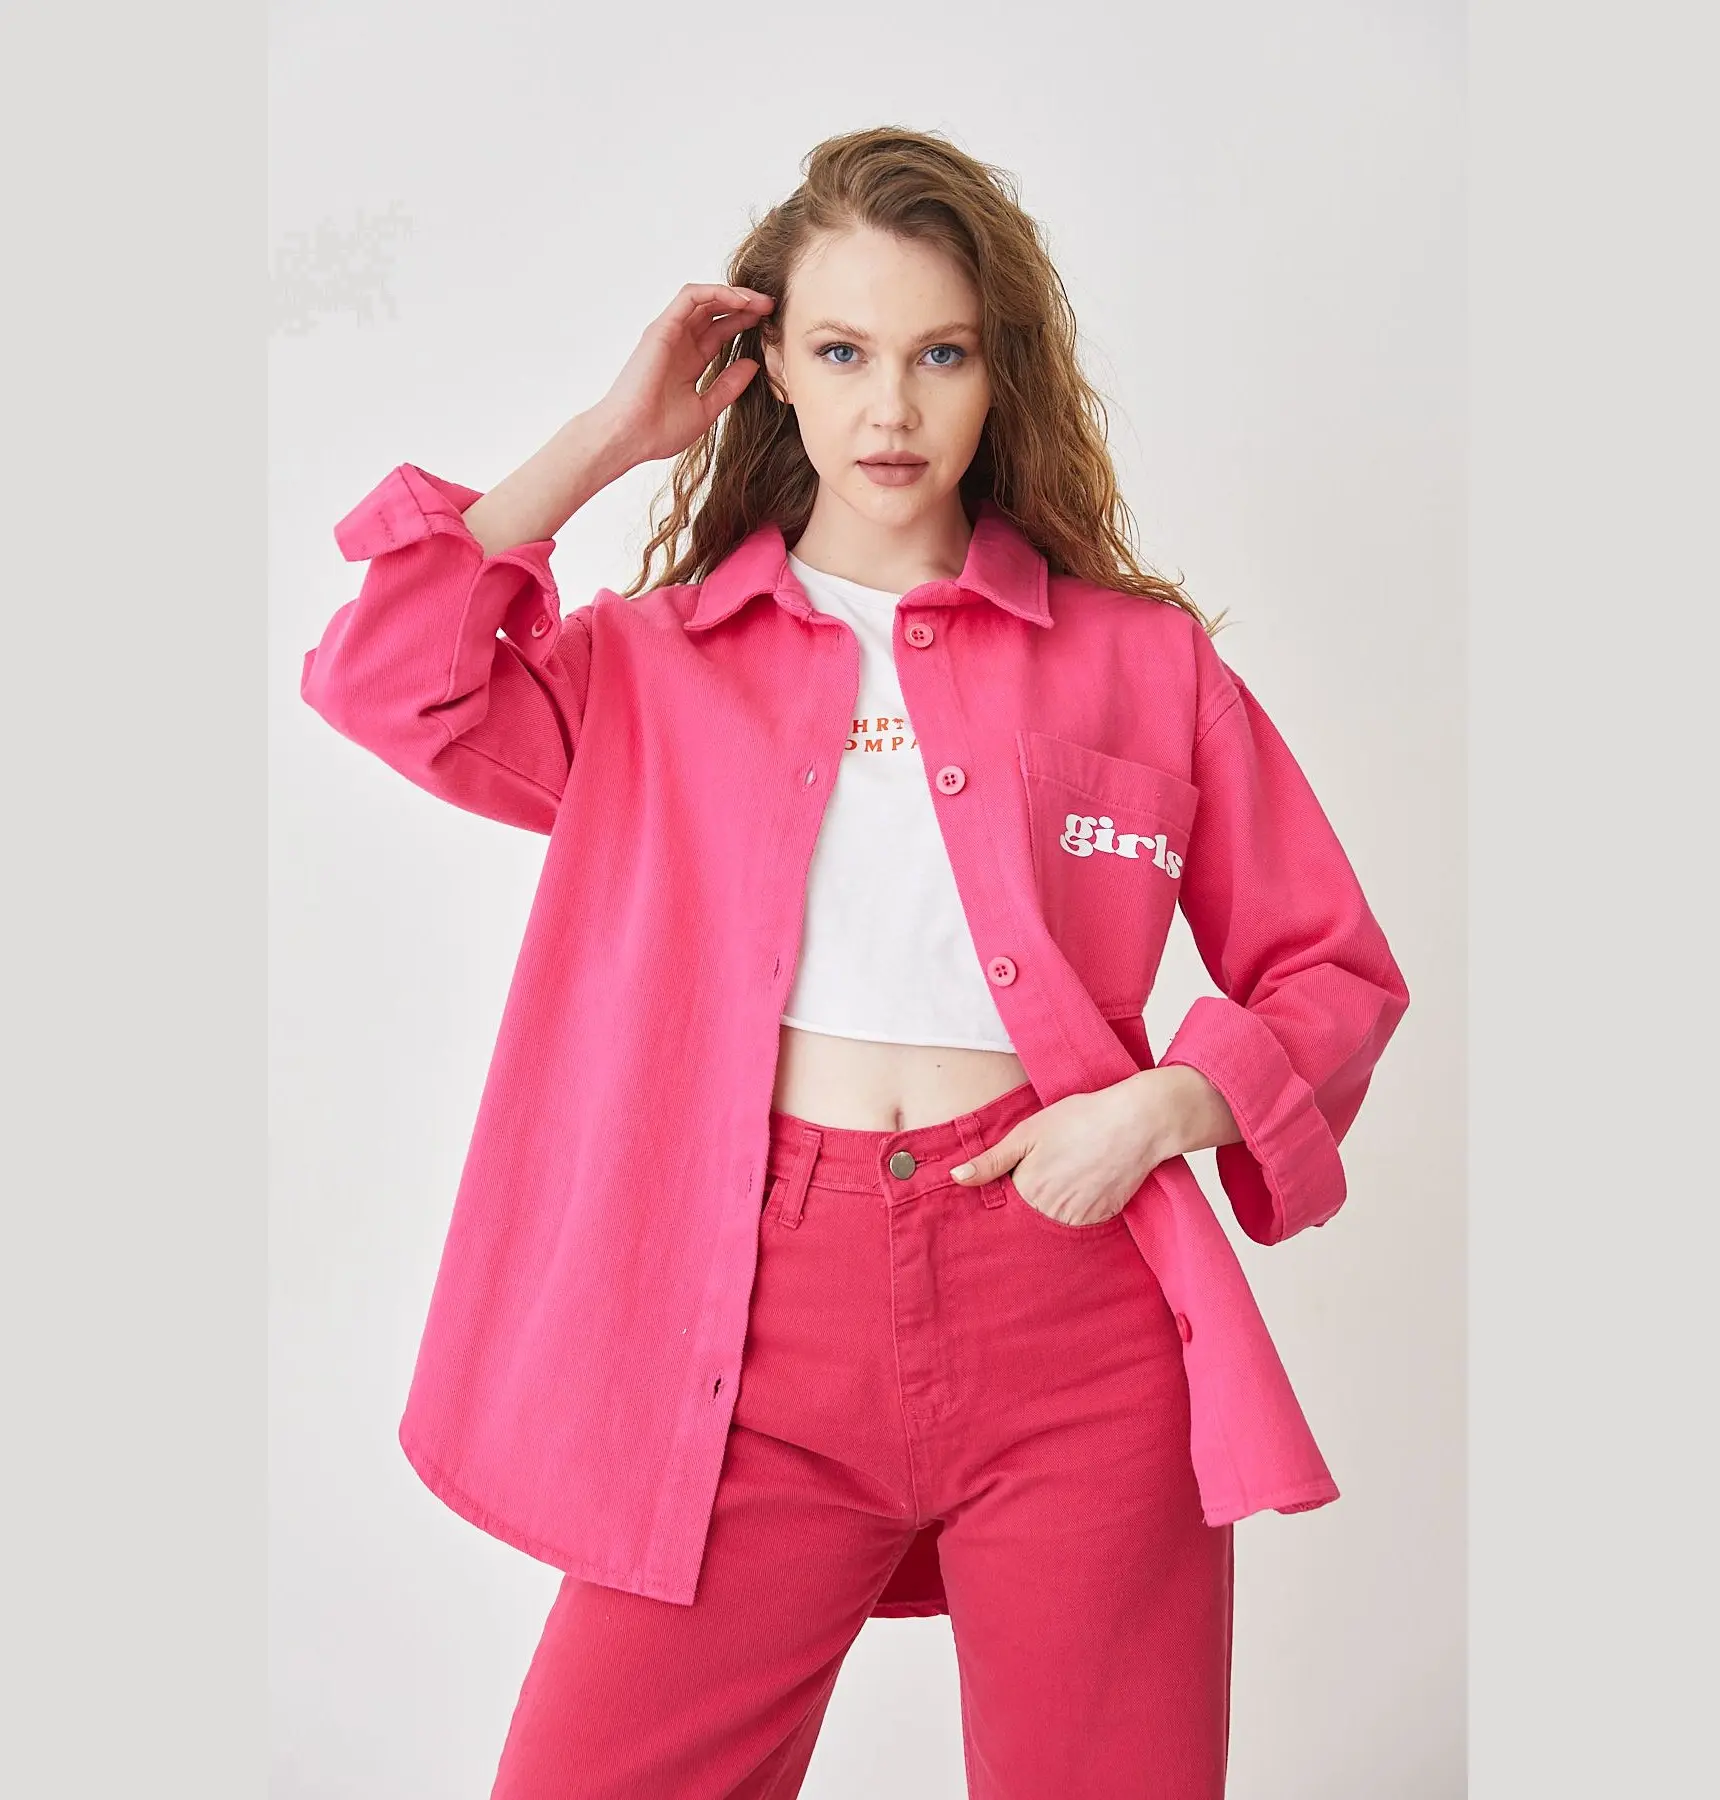 最新デザインピンク色女性ヨガトレーニングコーチングジャケット高品質ソフトシェルキルドストリートウェアフォーシーズンジャケット